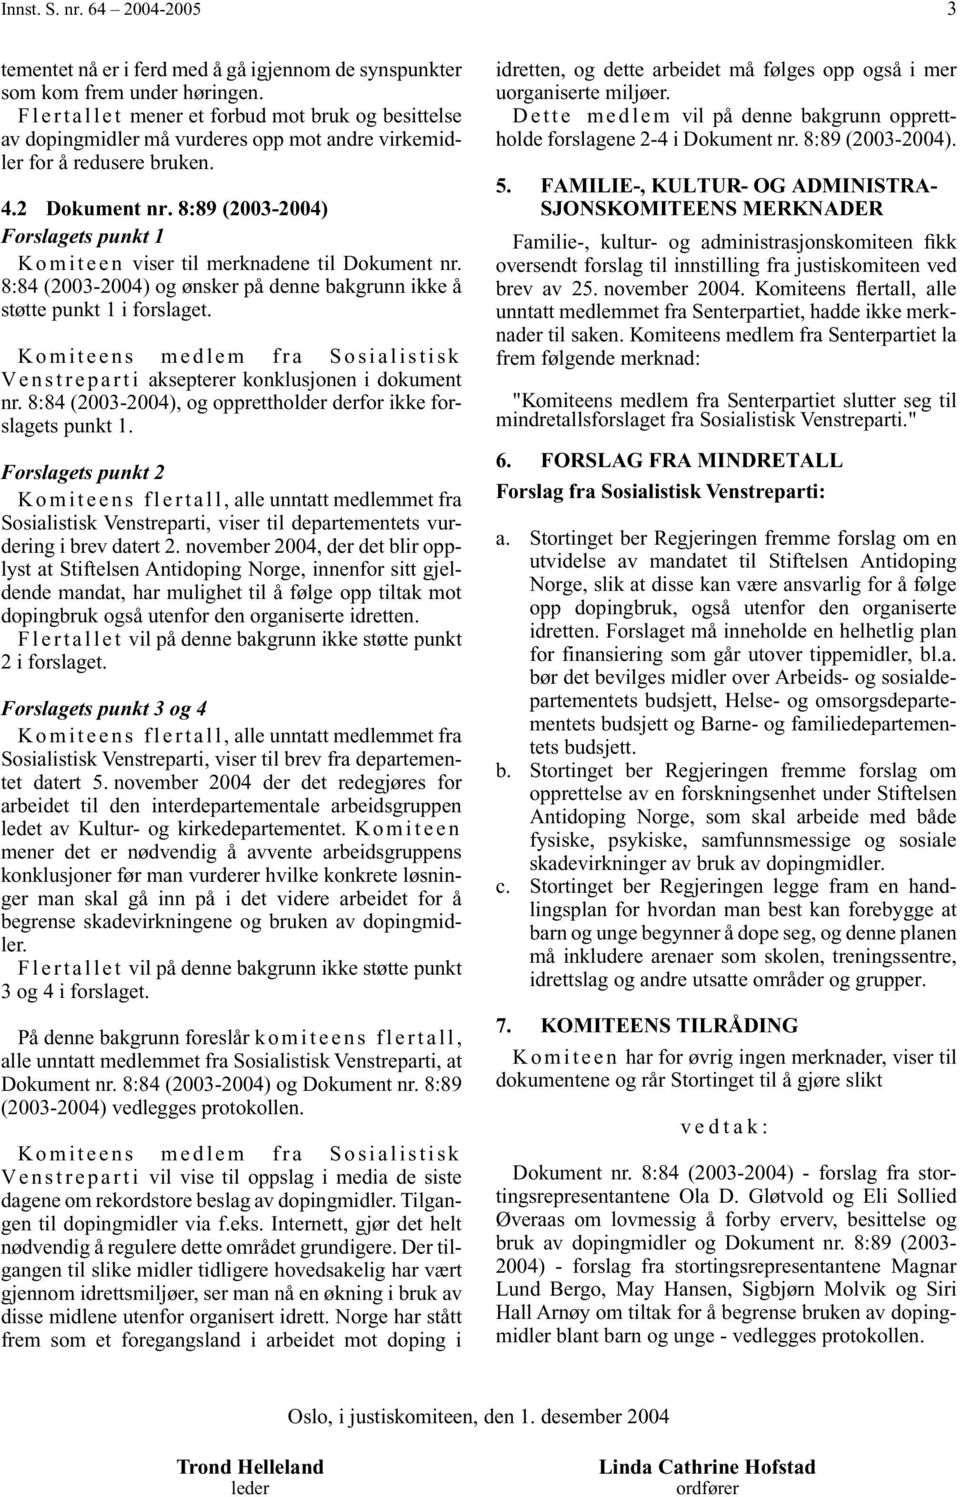 8:89 (2003-2004) Forslagets punkt 1 Komiteen viser til merknadene til Dokument nr. 8:84 (2003-2004) og ønsker på denne bakgrunn ikke å støtte punkt 1 i forslaget.